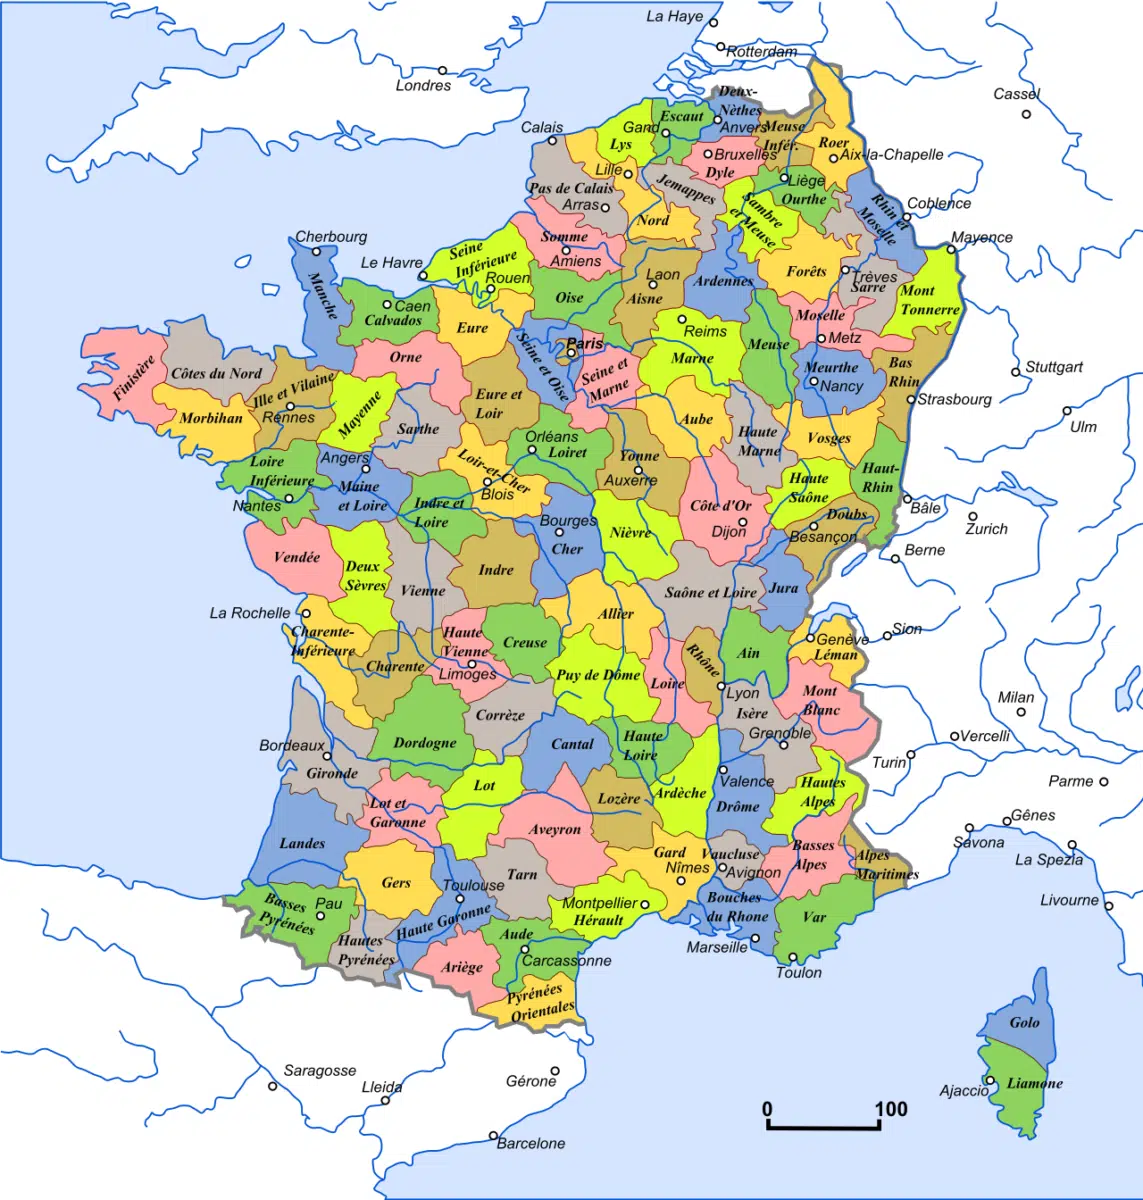 Carte des 130 départements de la France en 1811, c'est-à-dire à l'apogée du Premier Empire (et à l'expansion territoriale maximale de la France).